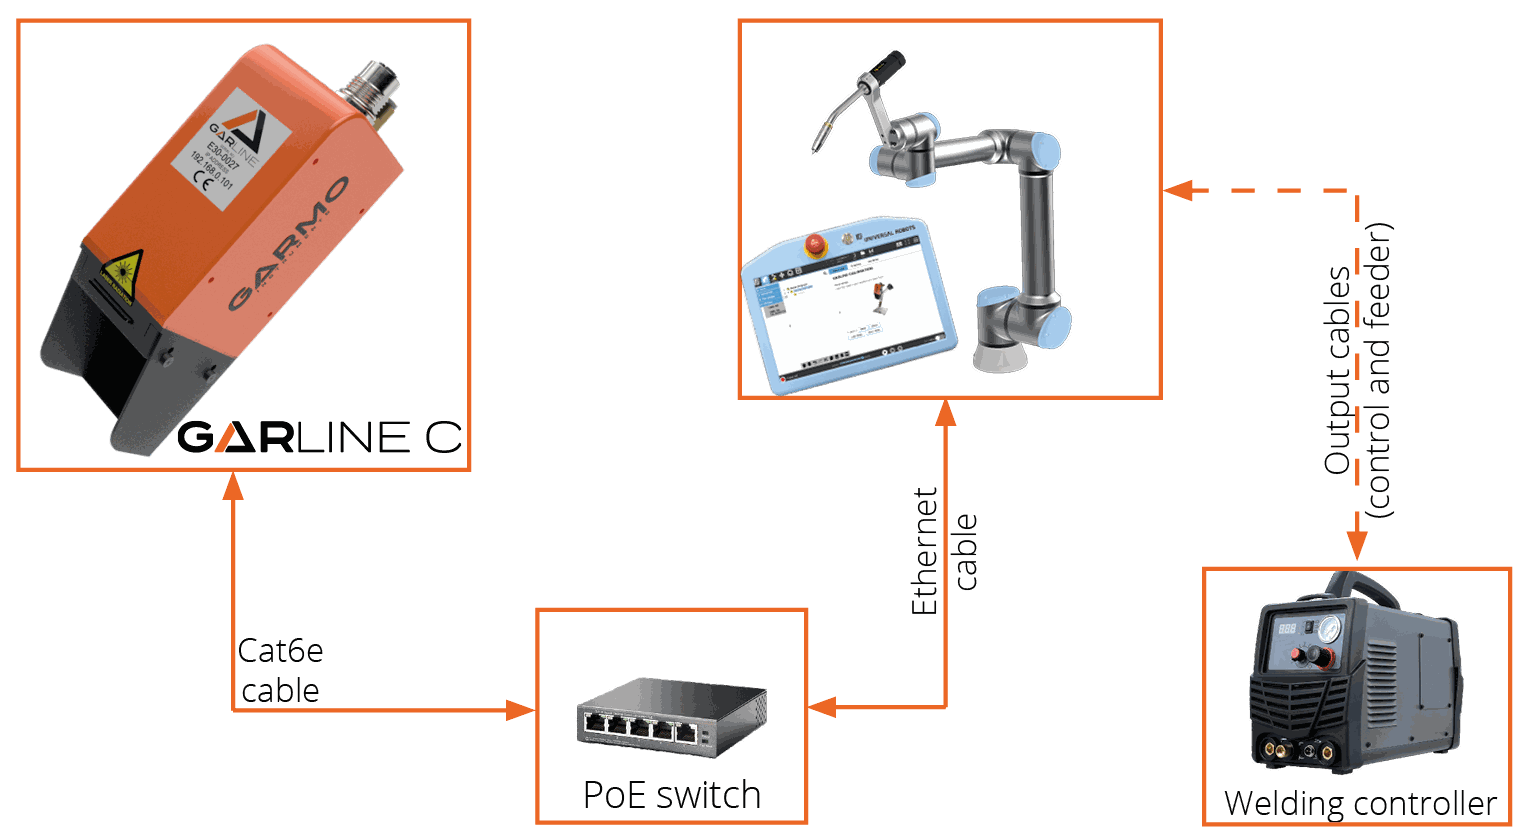 Garmo Instruments GarLine sensor laser seguimiento junta soldadura automatizada robótica productos sensores GarLine C diagrama conexiones